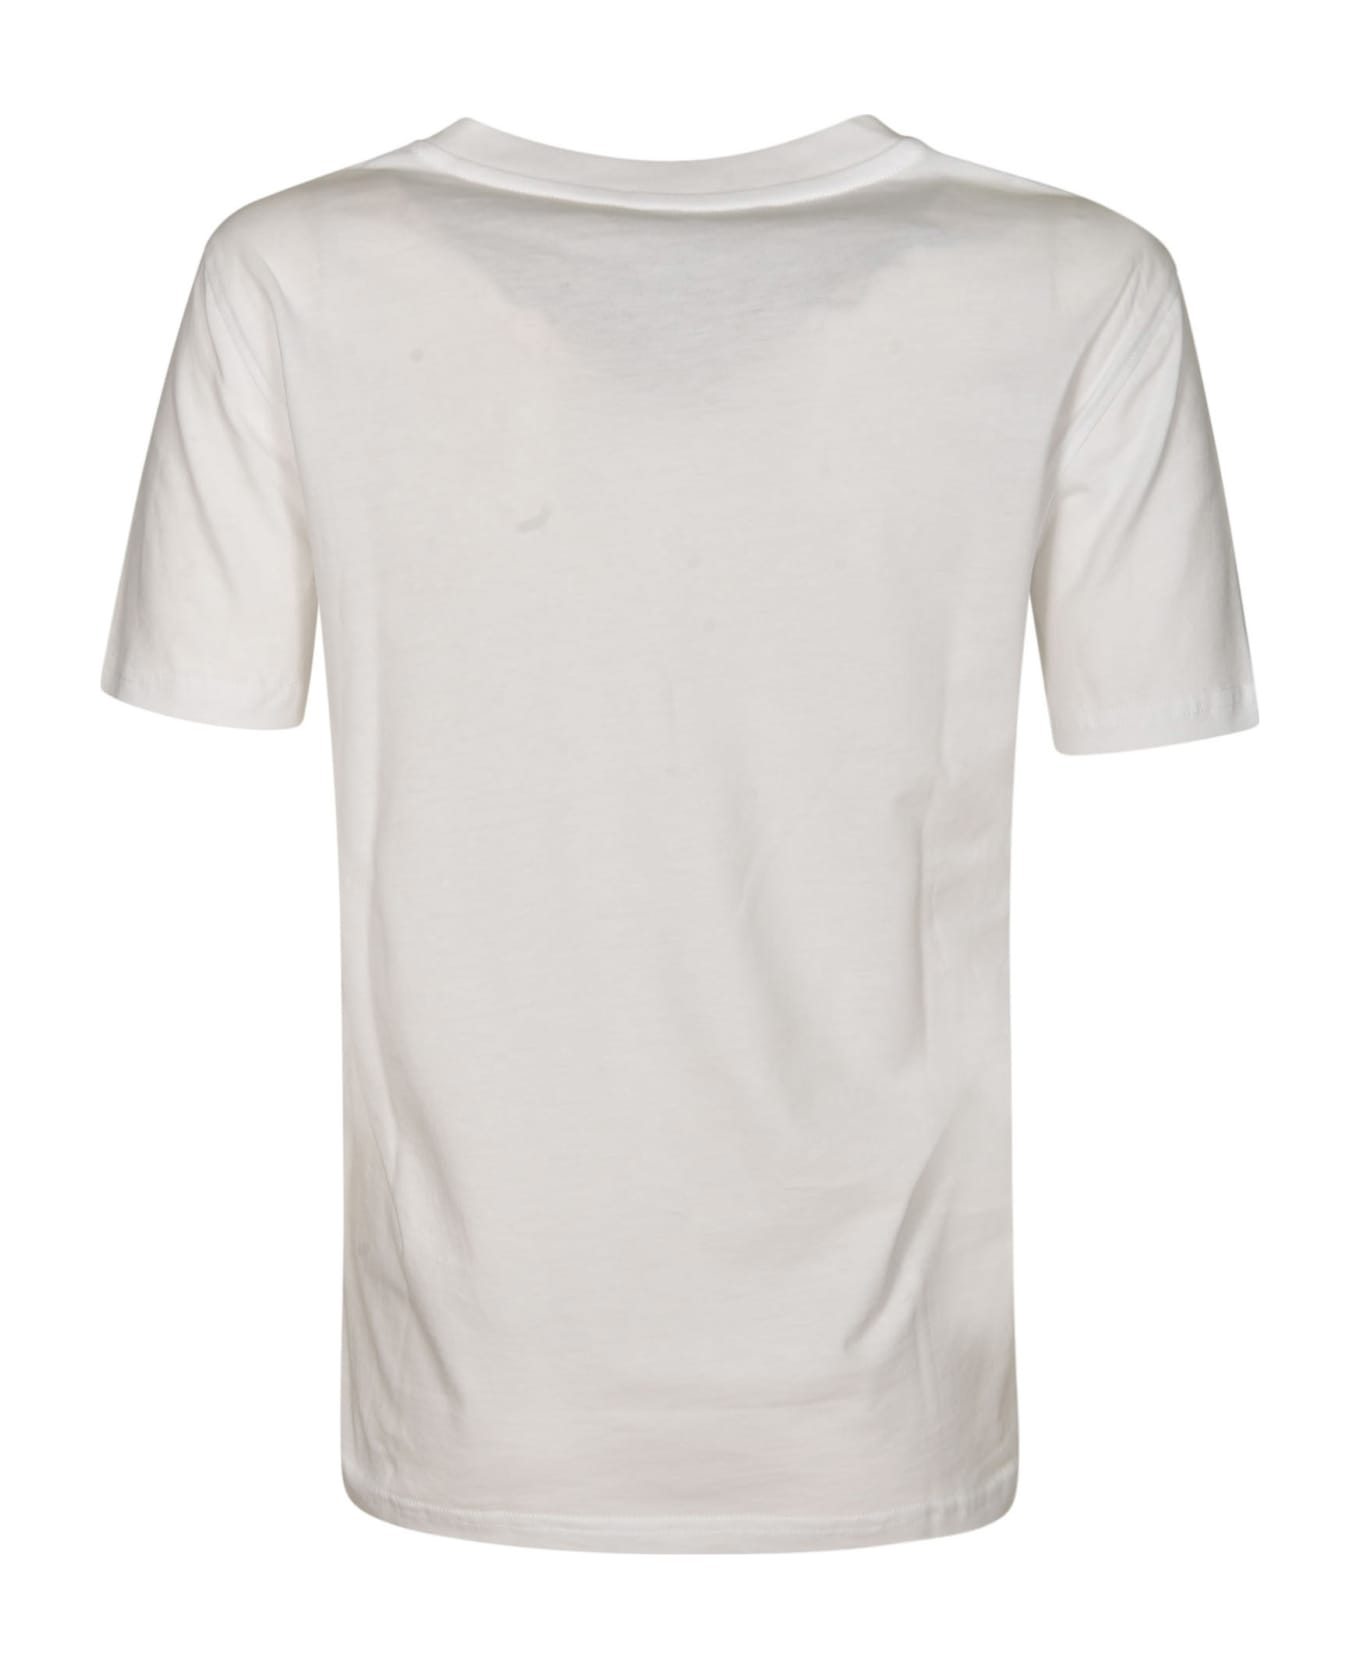 Moschino Teddy 40 Years Of Love T-shirt - White